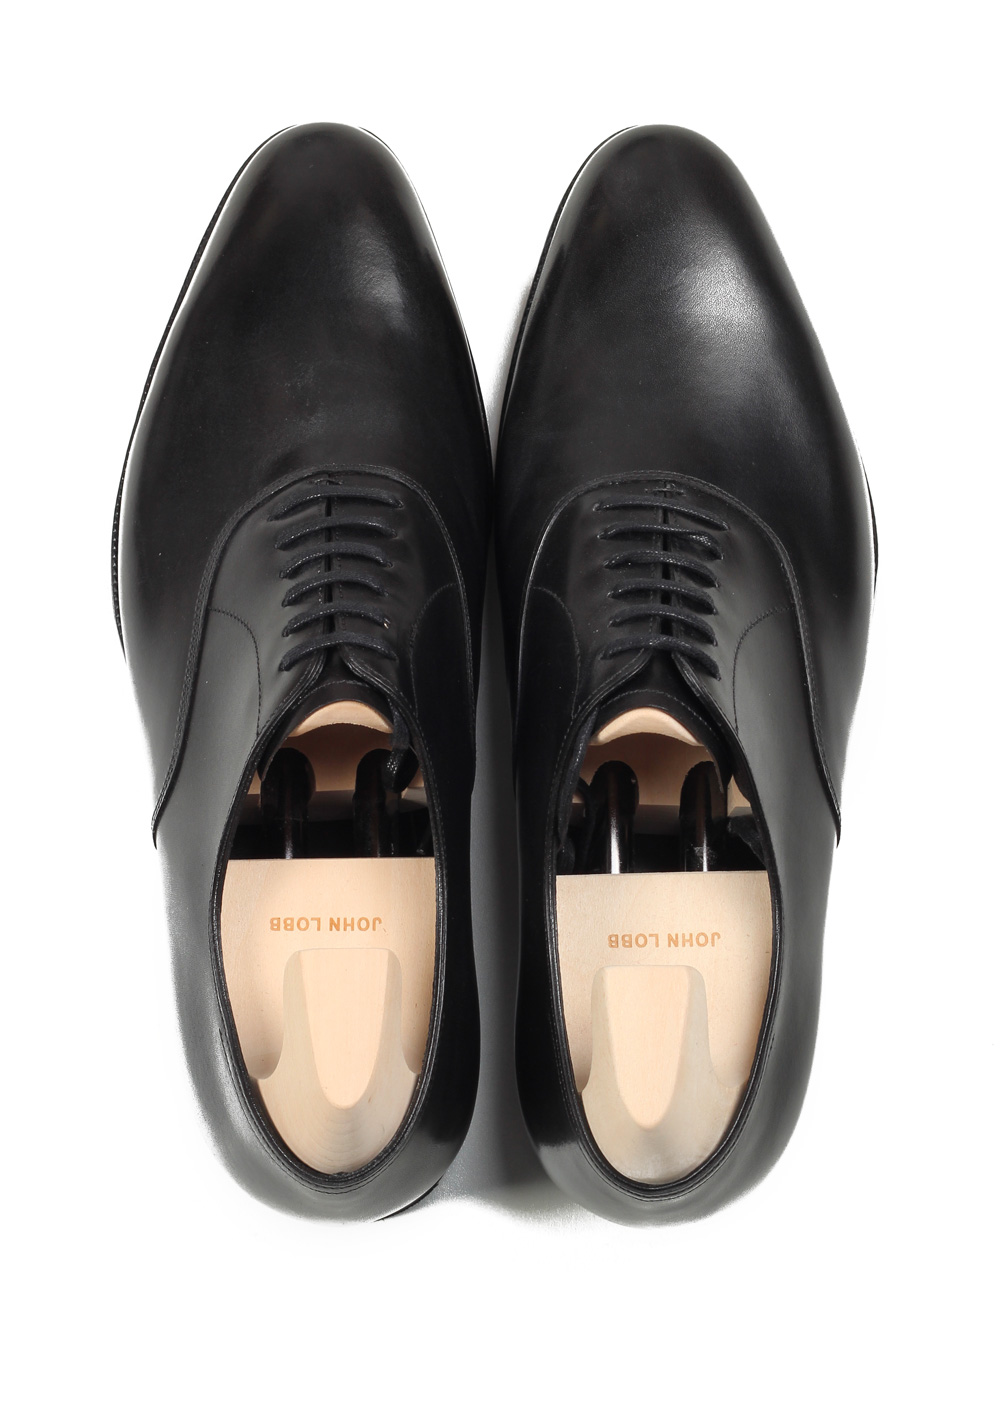 John Lobb Seaton Black Oxford Shoes Size 7 UK / 8 U.S. On 7000 Last ...